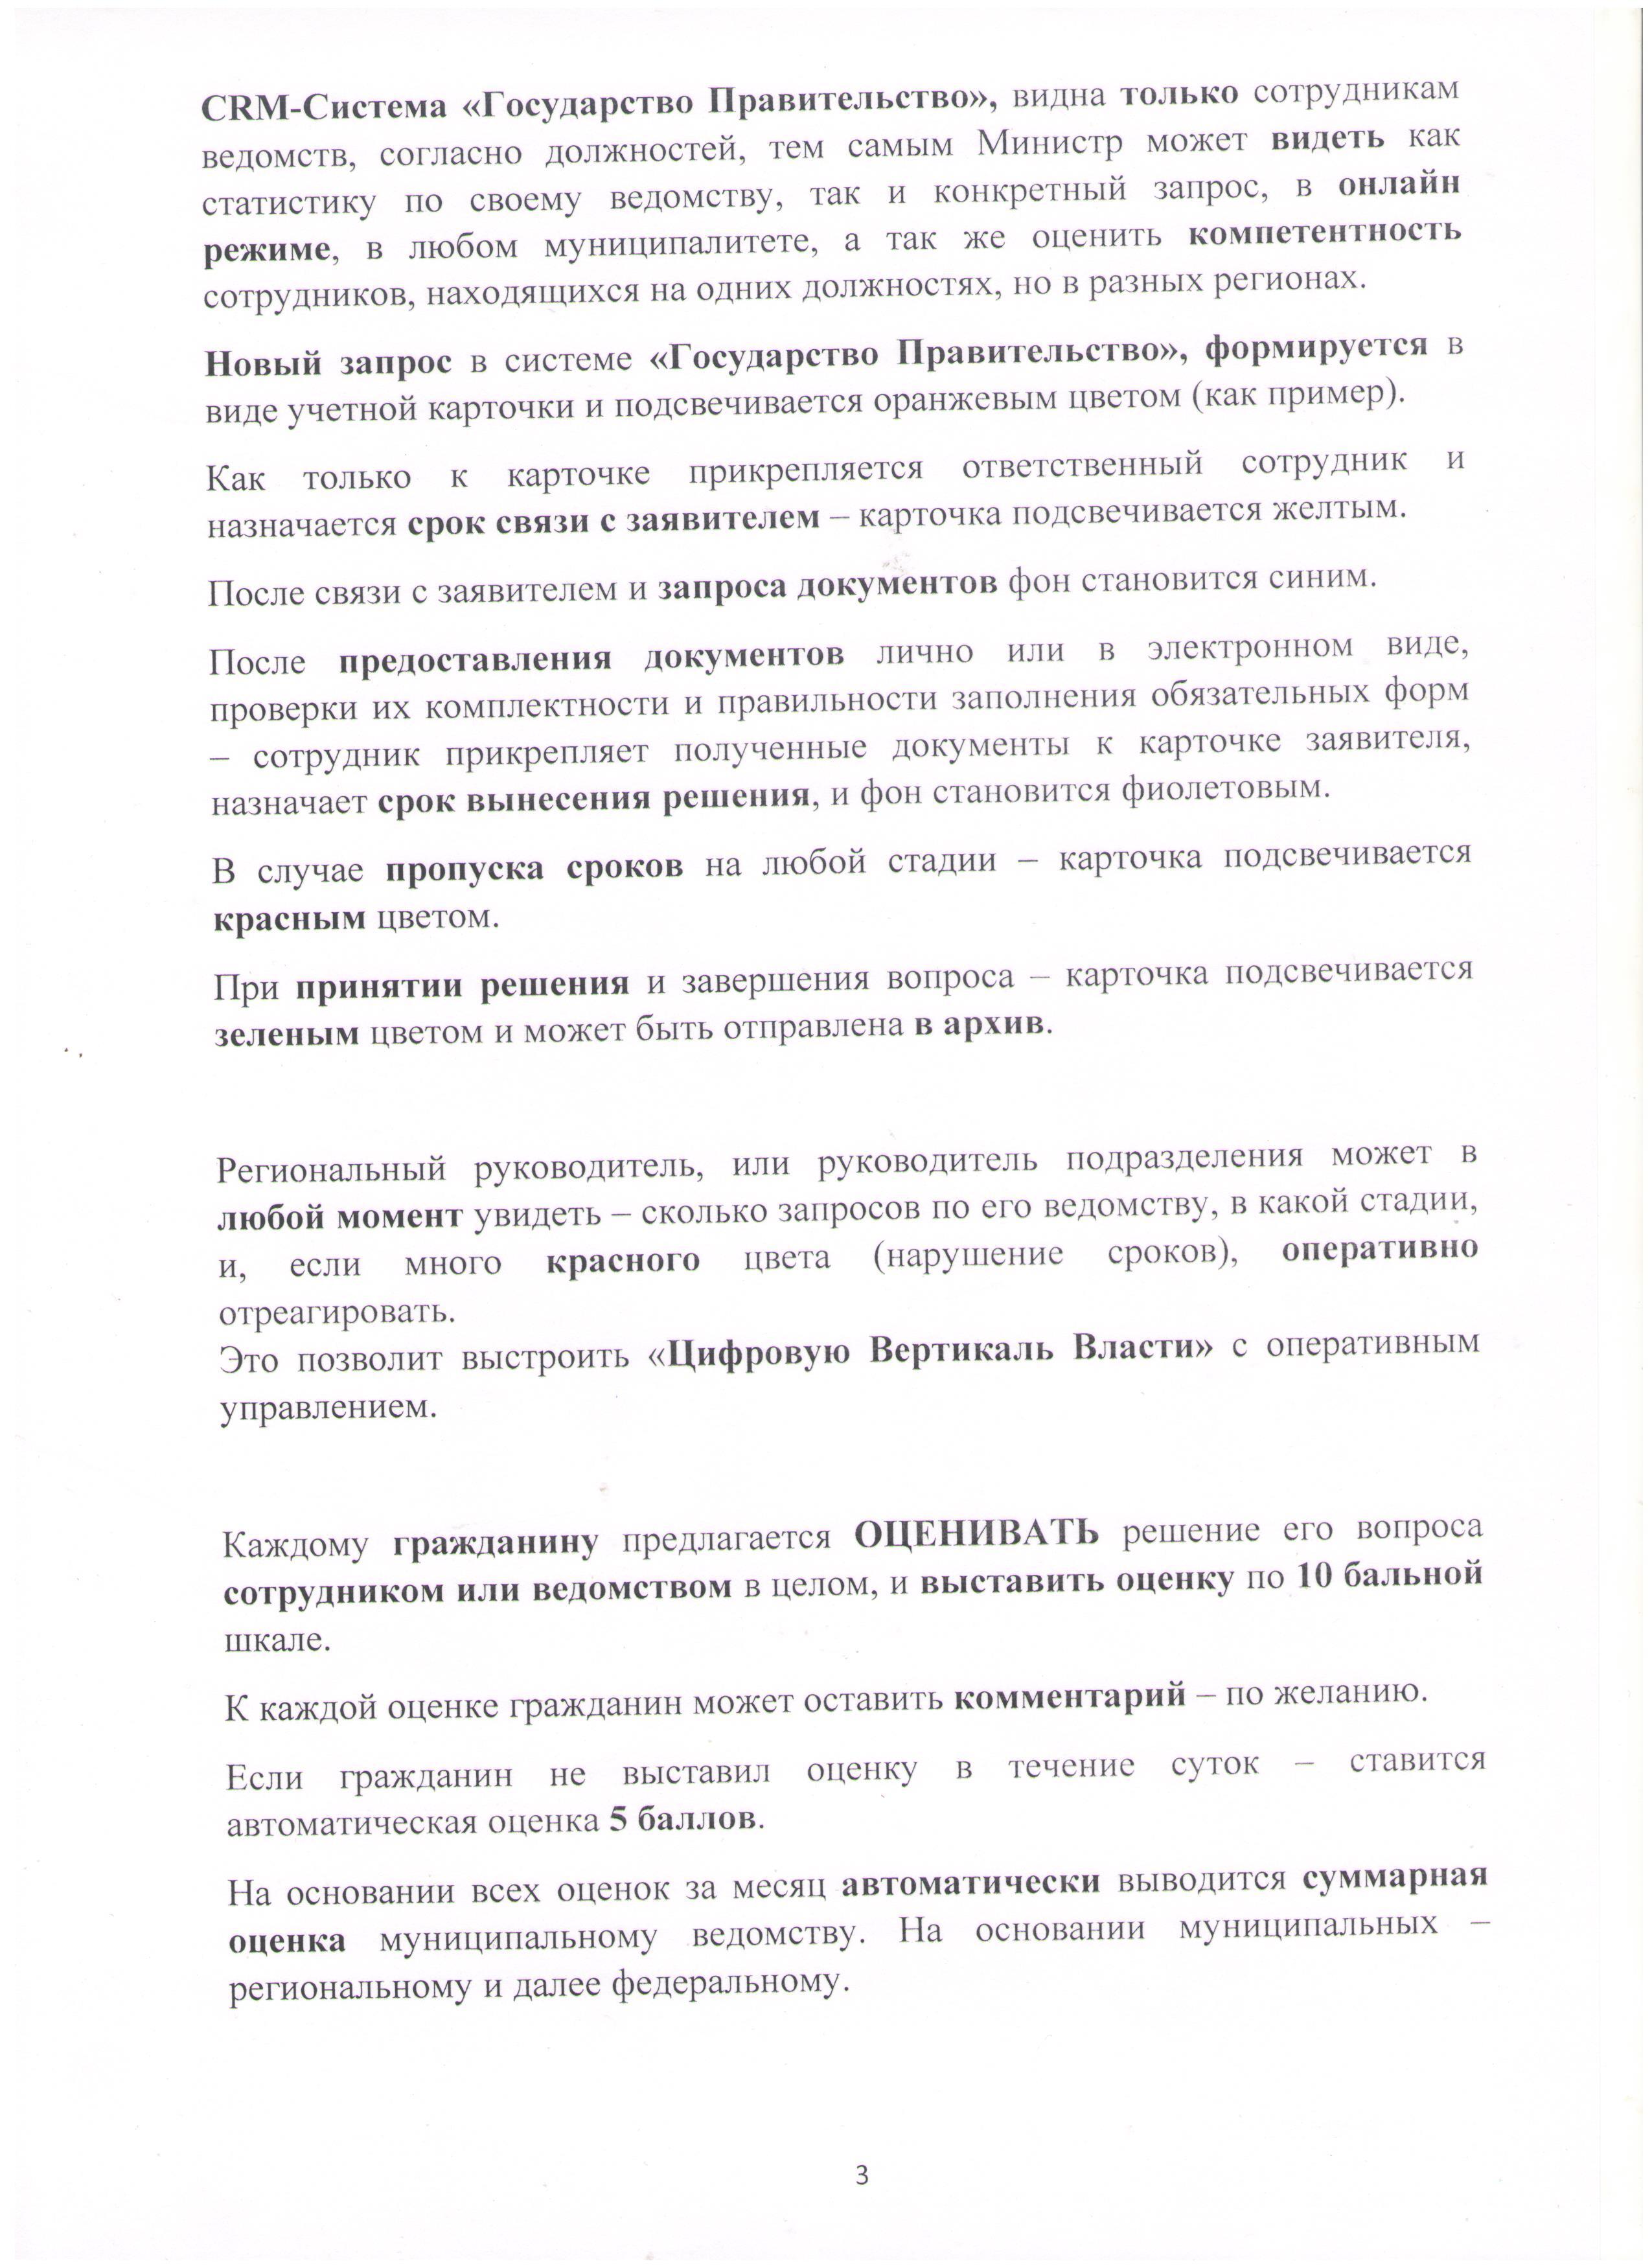  Открытое письмо Президенту РФ Лист 3